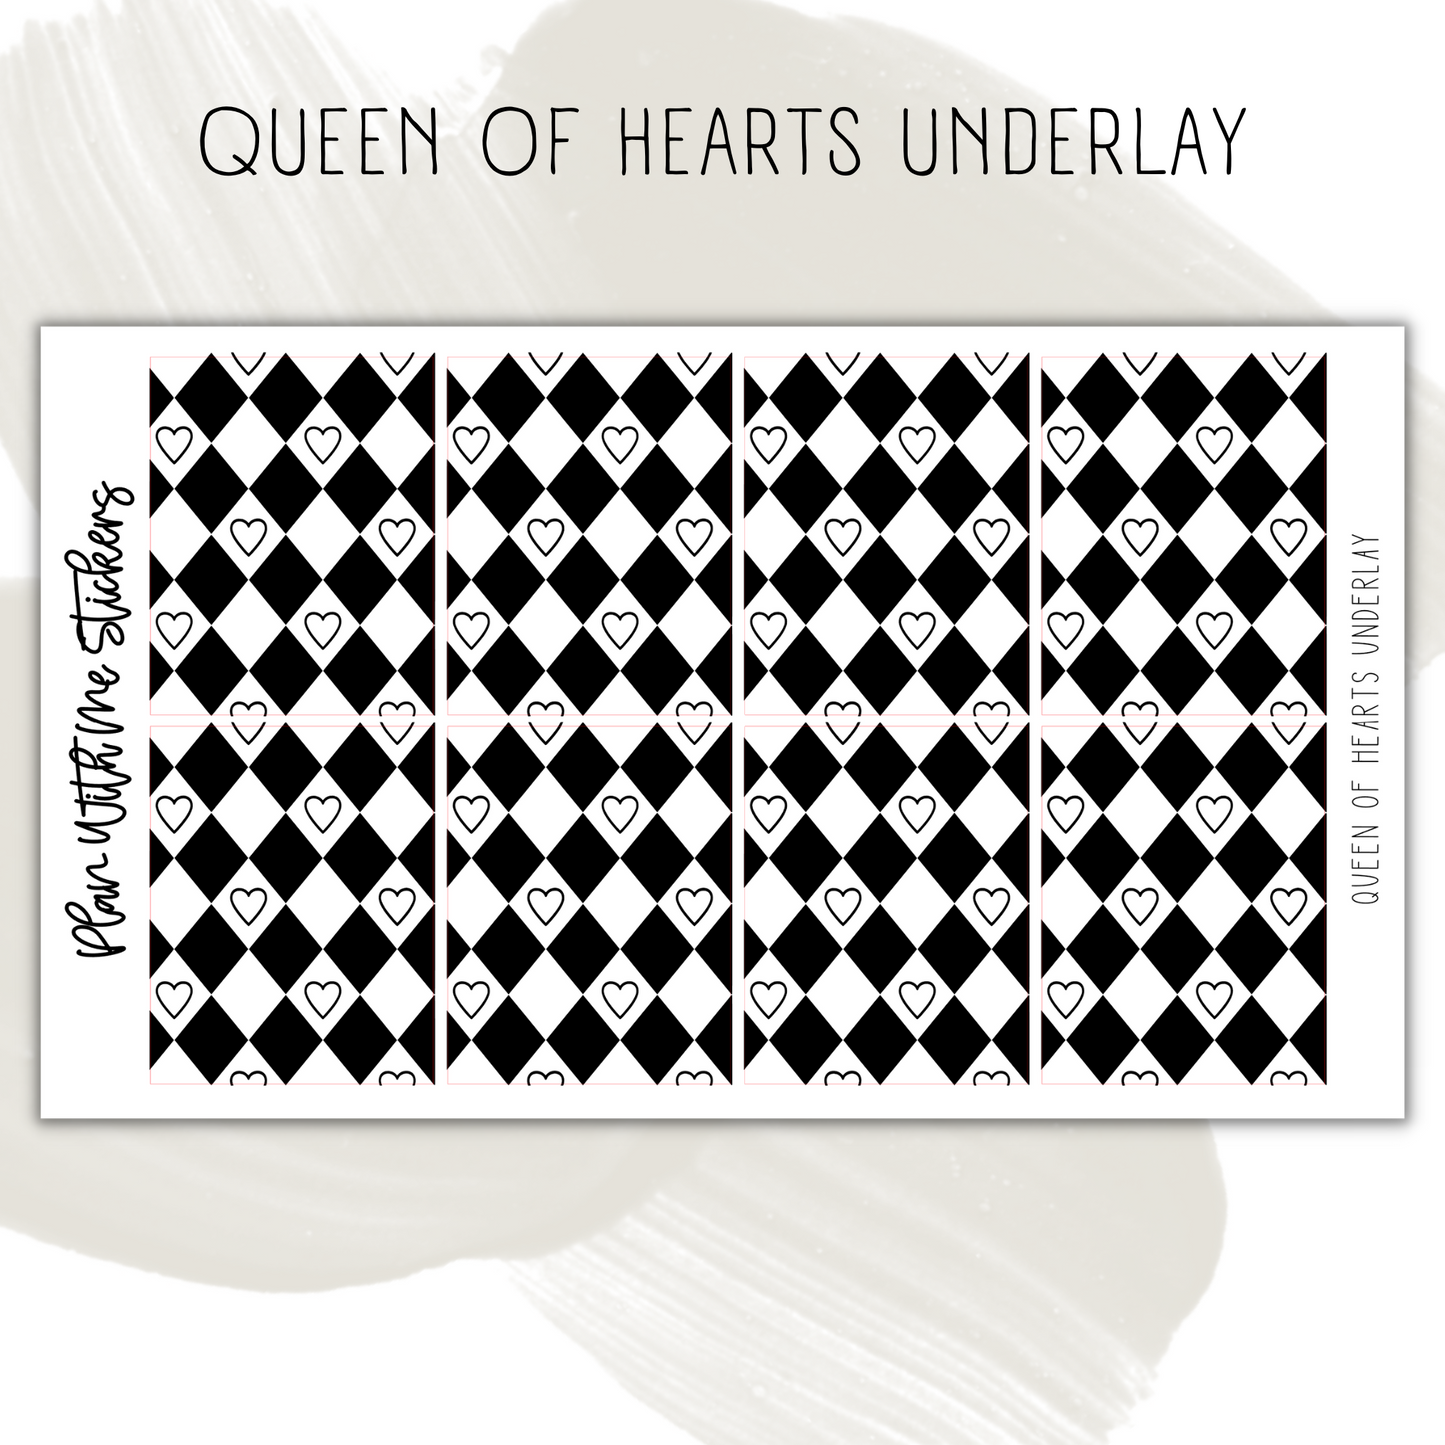 Queen of Hearts Underlay